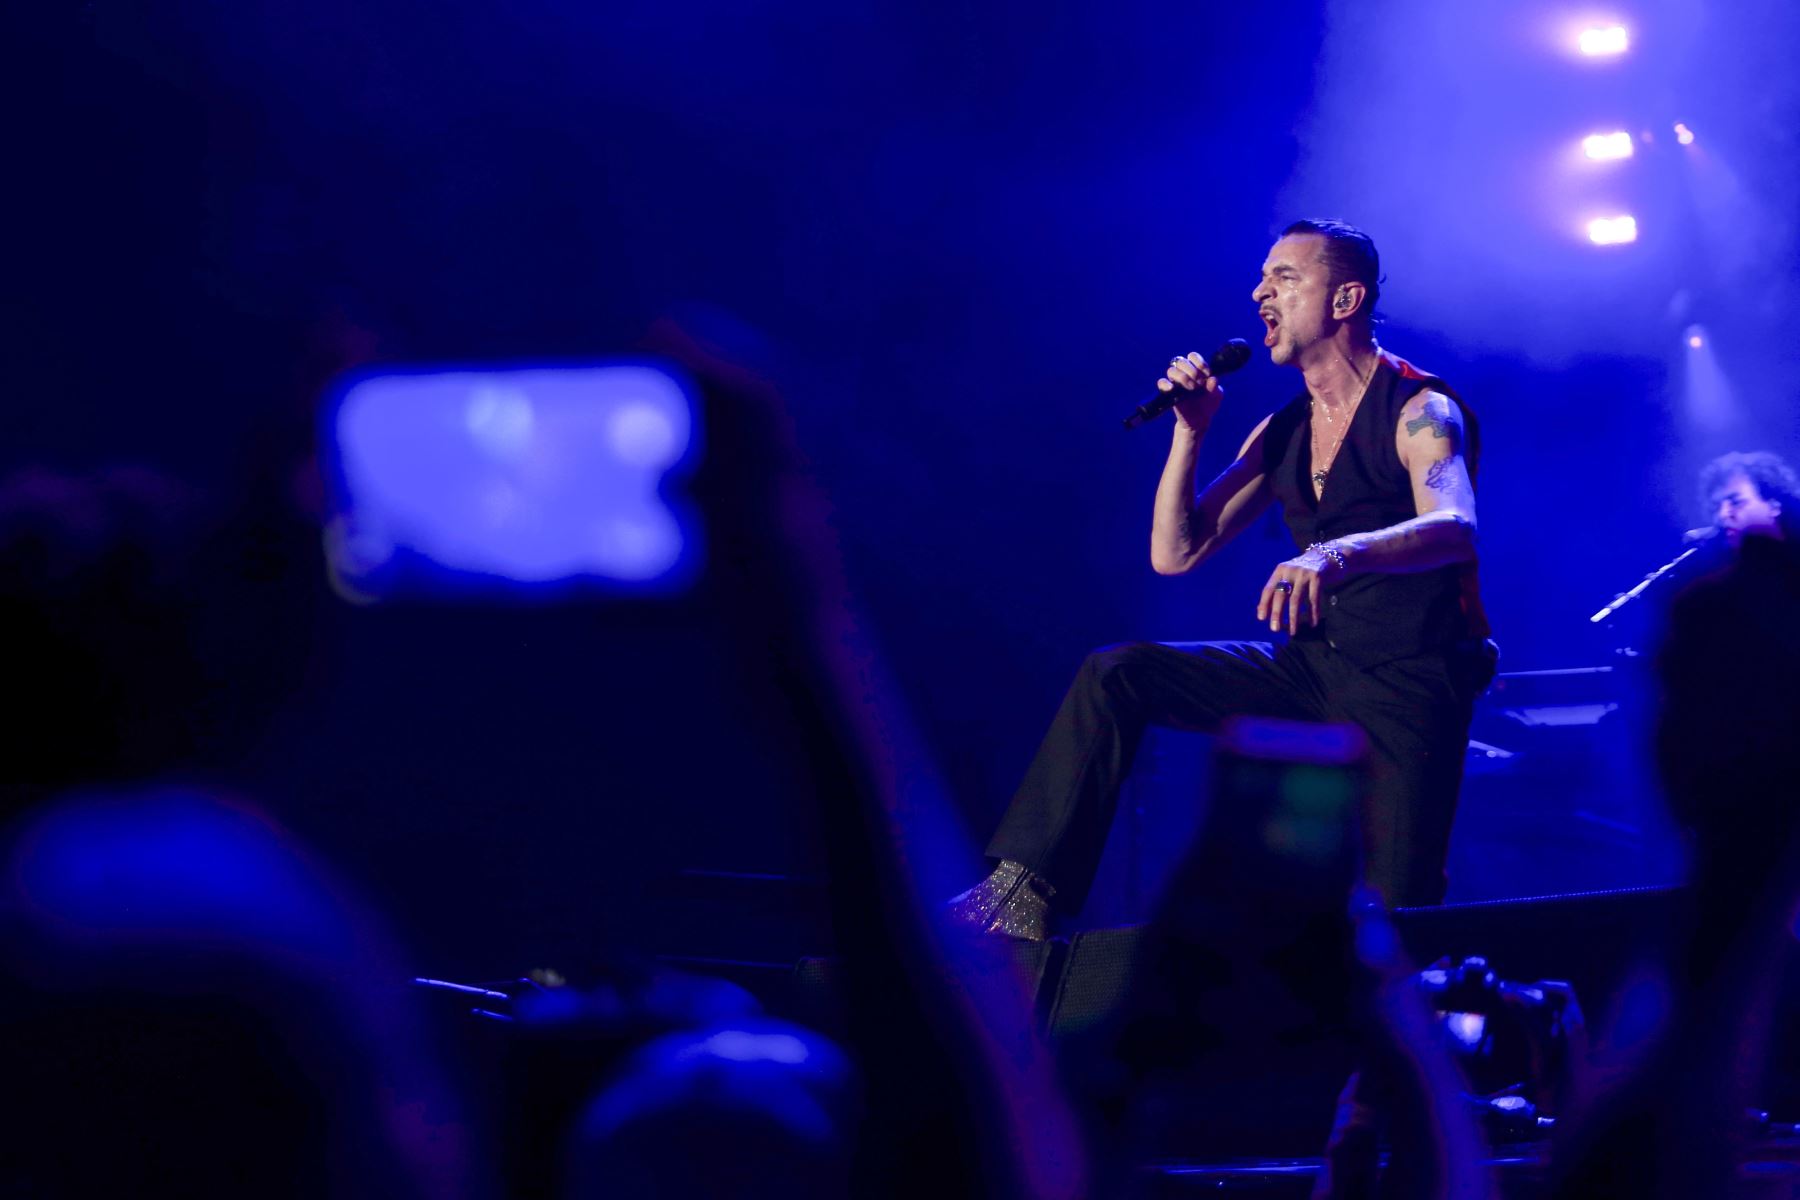 Depeche Mode llenó la noche y parte de la madrugada limeña con su único show.Foto:ANDINA/Difusión